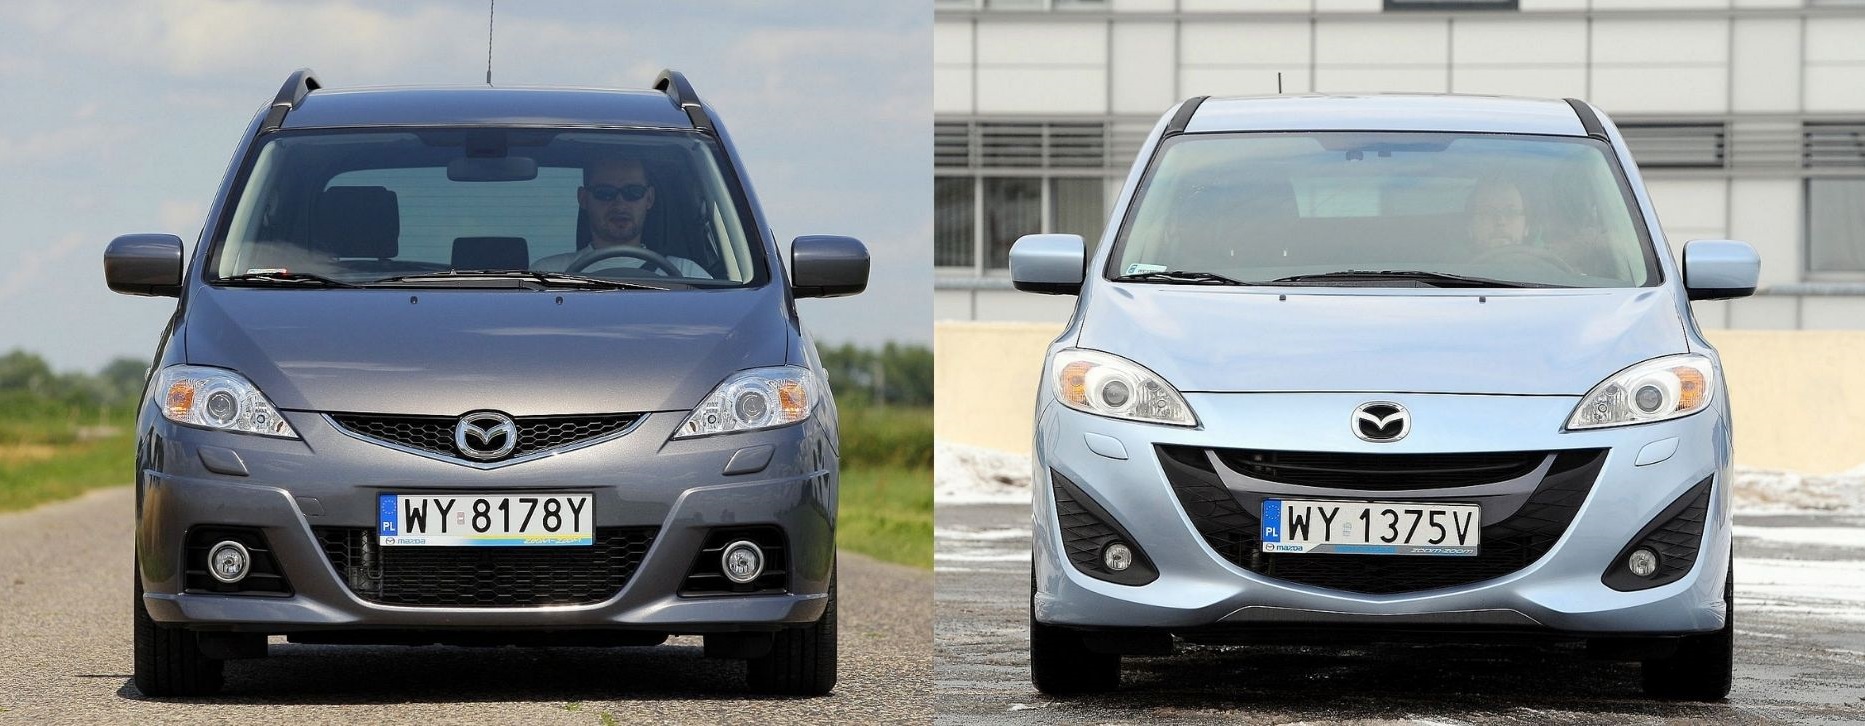 Używana Mazda 5 I (Cr) I Mazda 5 Ii (Cw) - Którą Generację Wybrać?